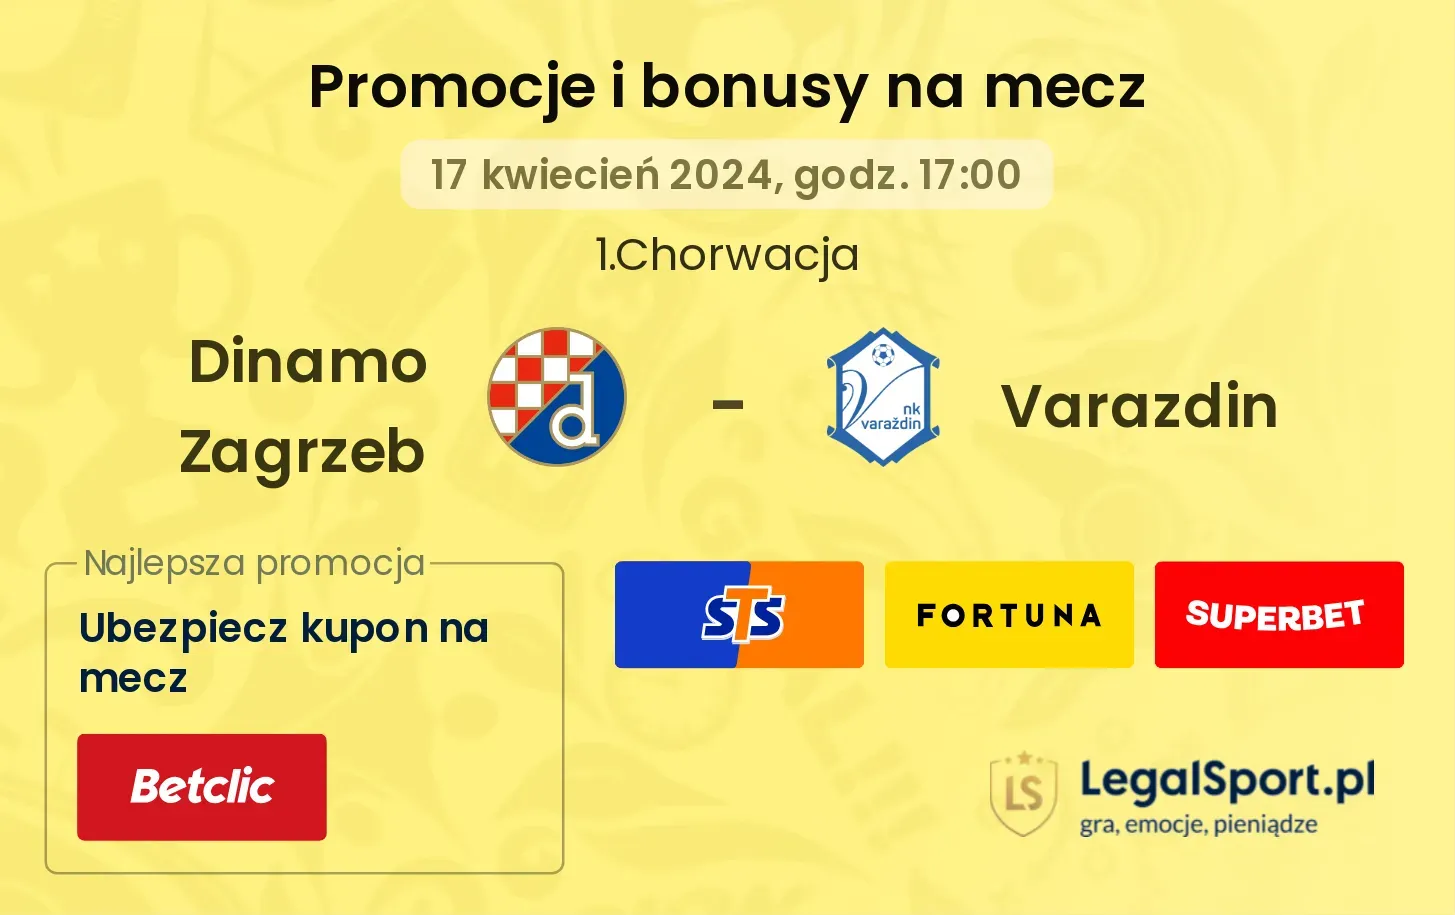 Dinamo Zagrzeb - Varazdin promocje bonusy na mecz